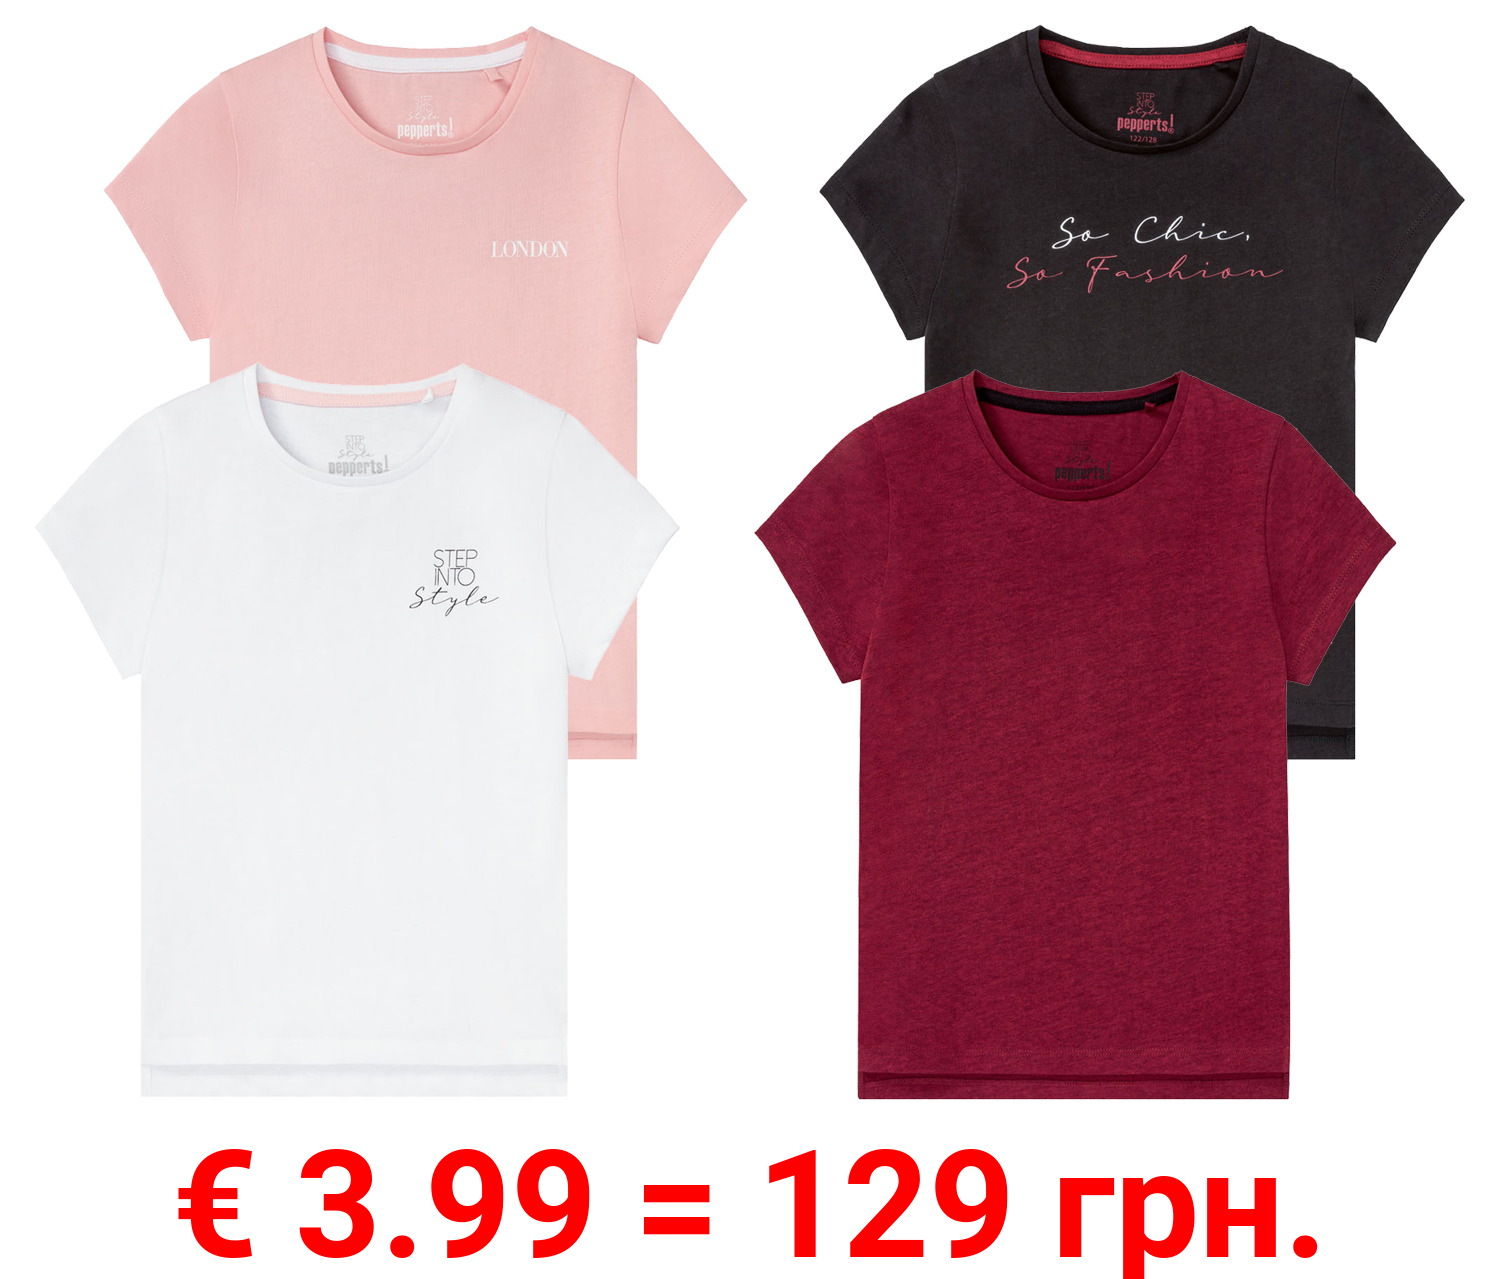 PEPPERTS® Mädchen T-Shirts, 2 Stück, mit seitlichem Schlitz